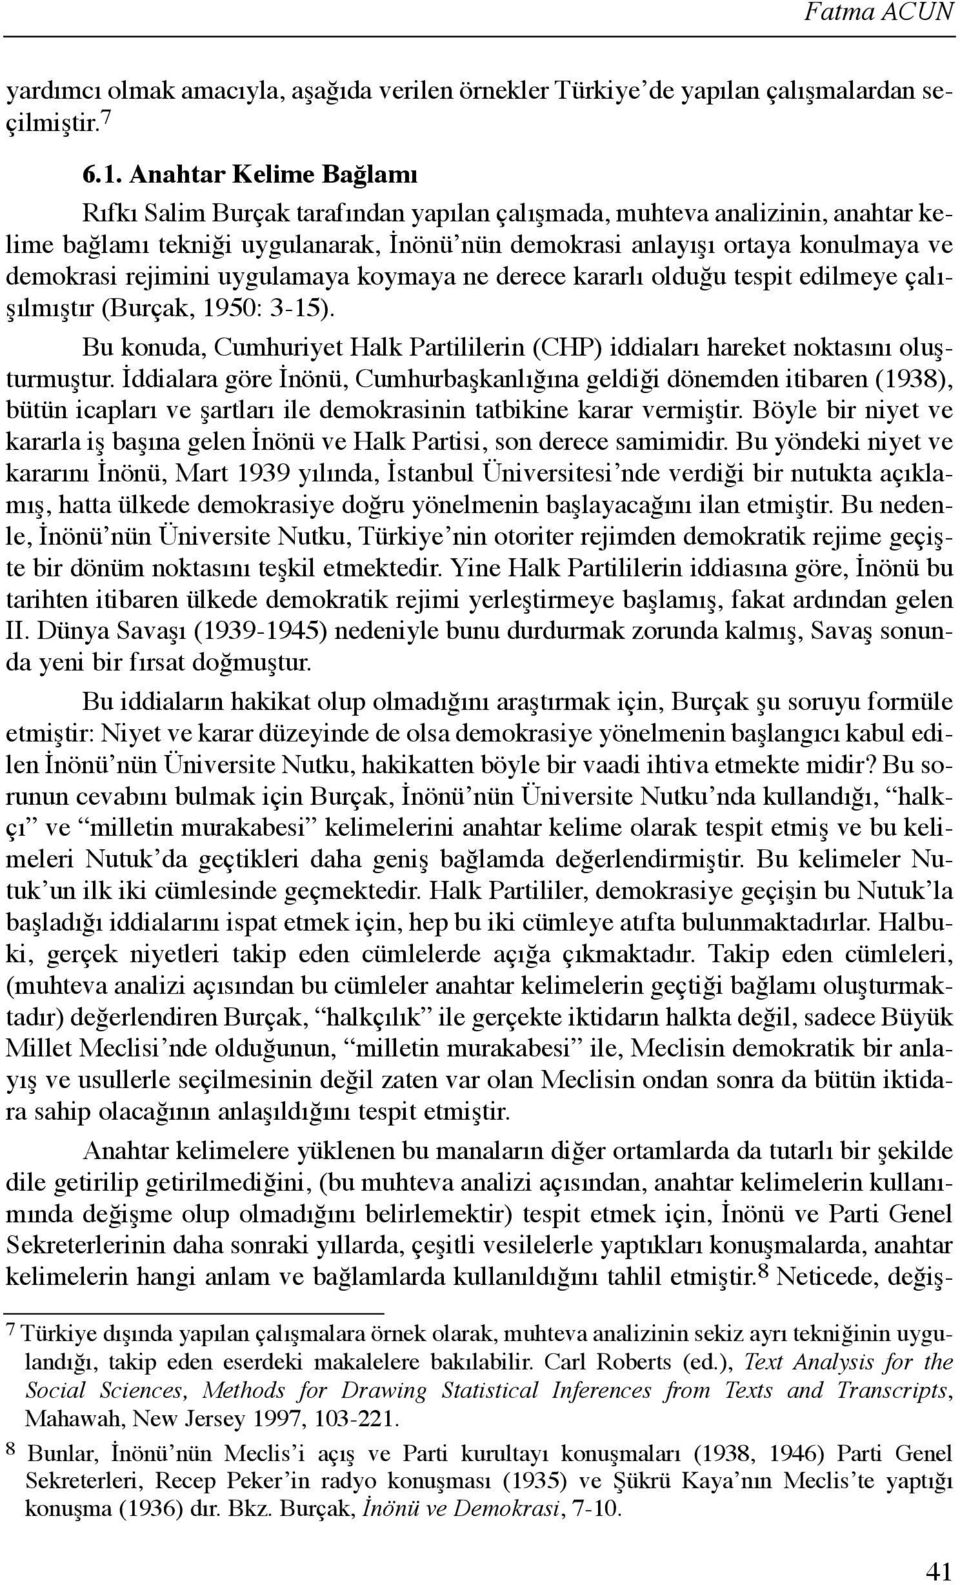 rejimini uygulamaya koymaya ne derece kararlõ olduğu tespit edilmeye çalõşõlmõştõr (Burçak, 1950: 3-15). Bu konuda, Cumhuriyet Halk Partililerin (CHP) iddialarõ hareket noktasõnõ oluşturmuştur.